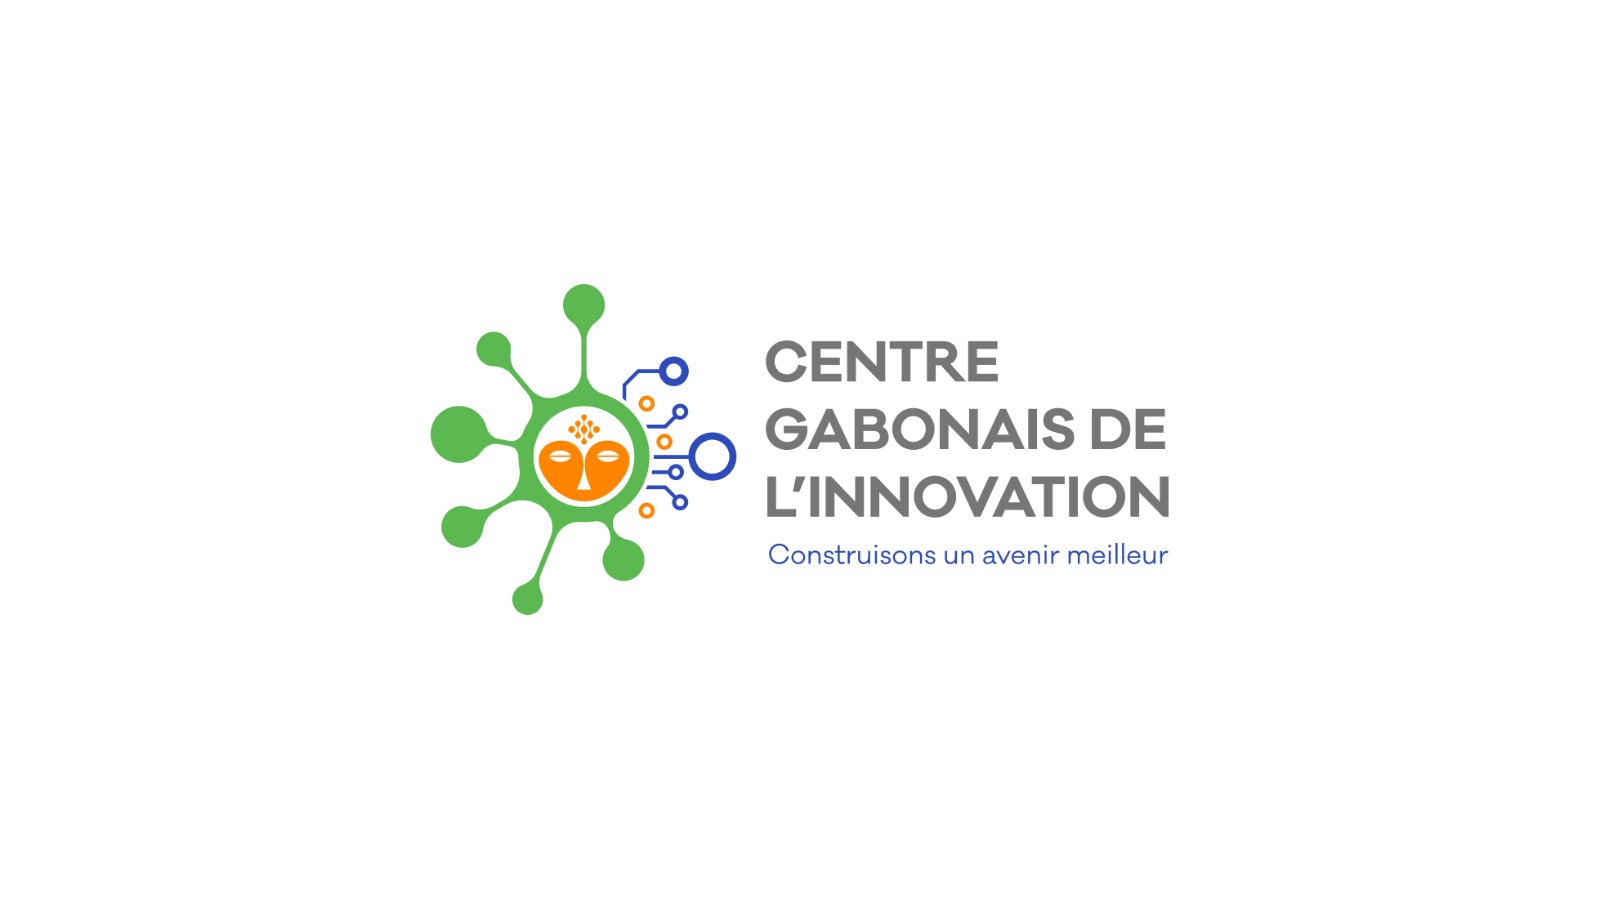 Présentation  des activités d’ACCULTURATION DIGITALE du Centre Gabonais de L’Innovation